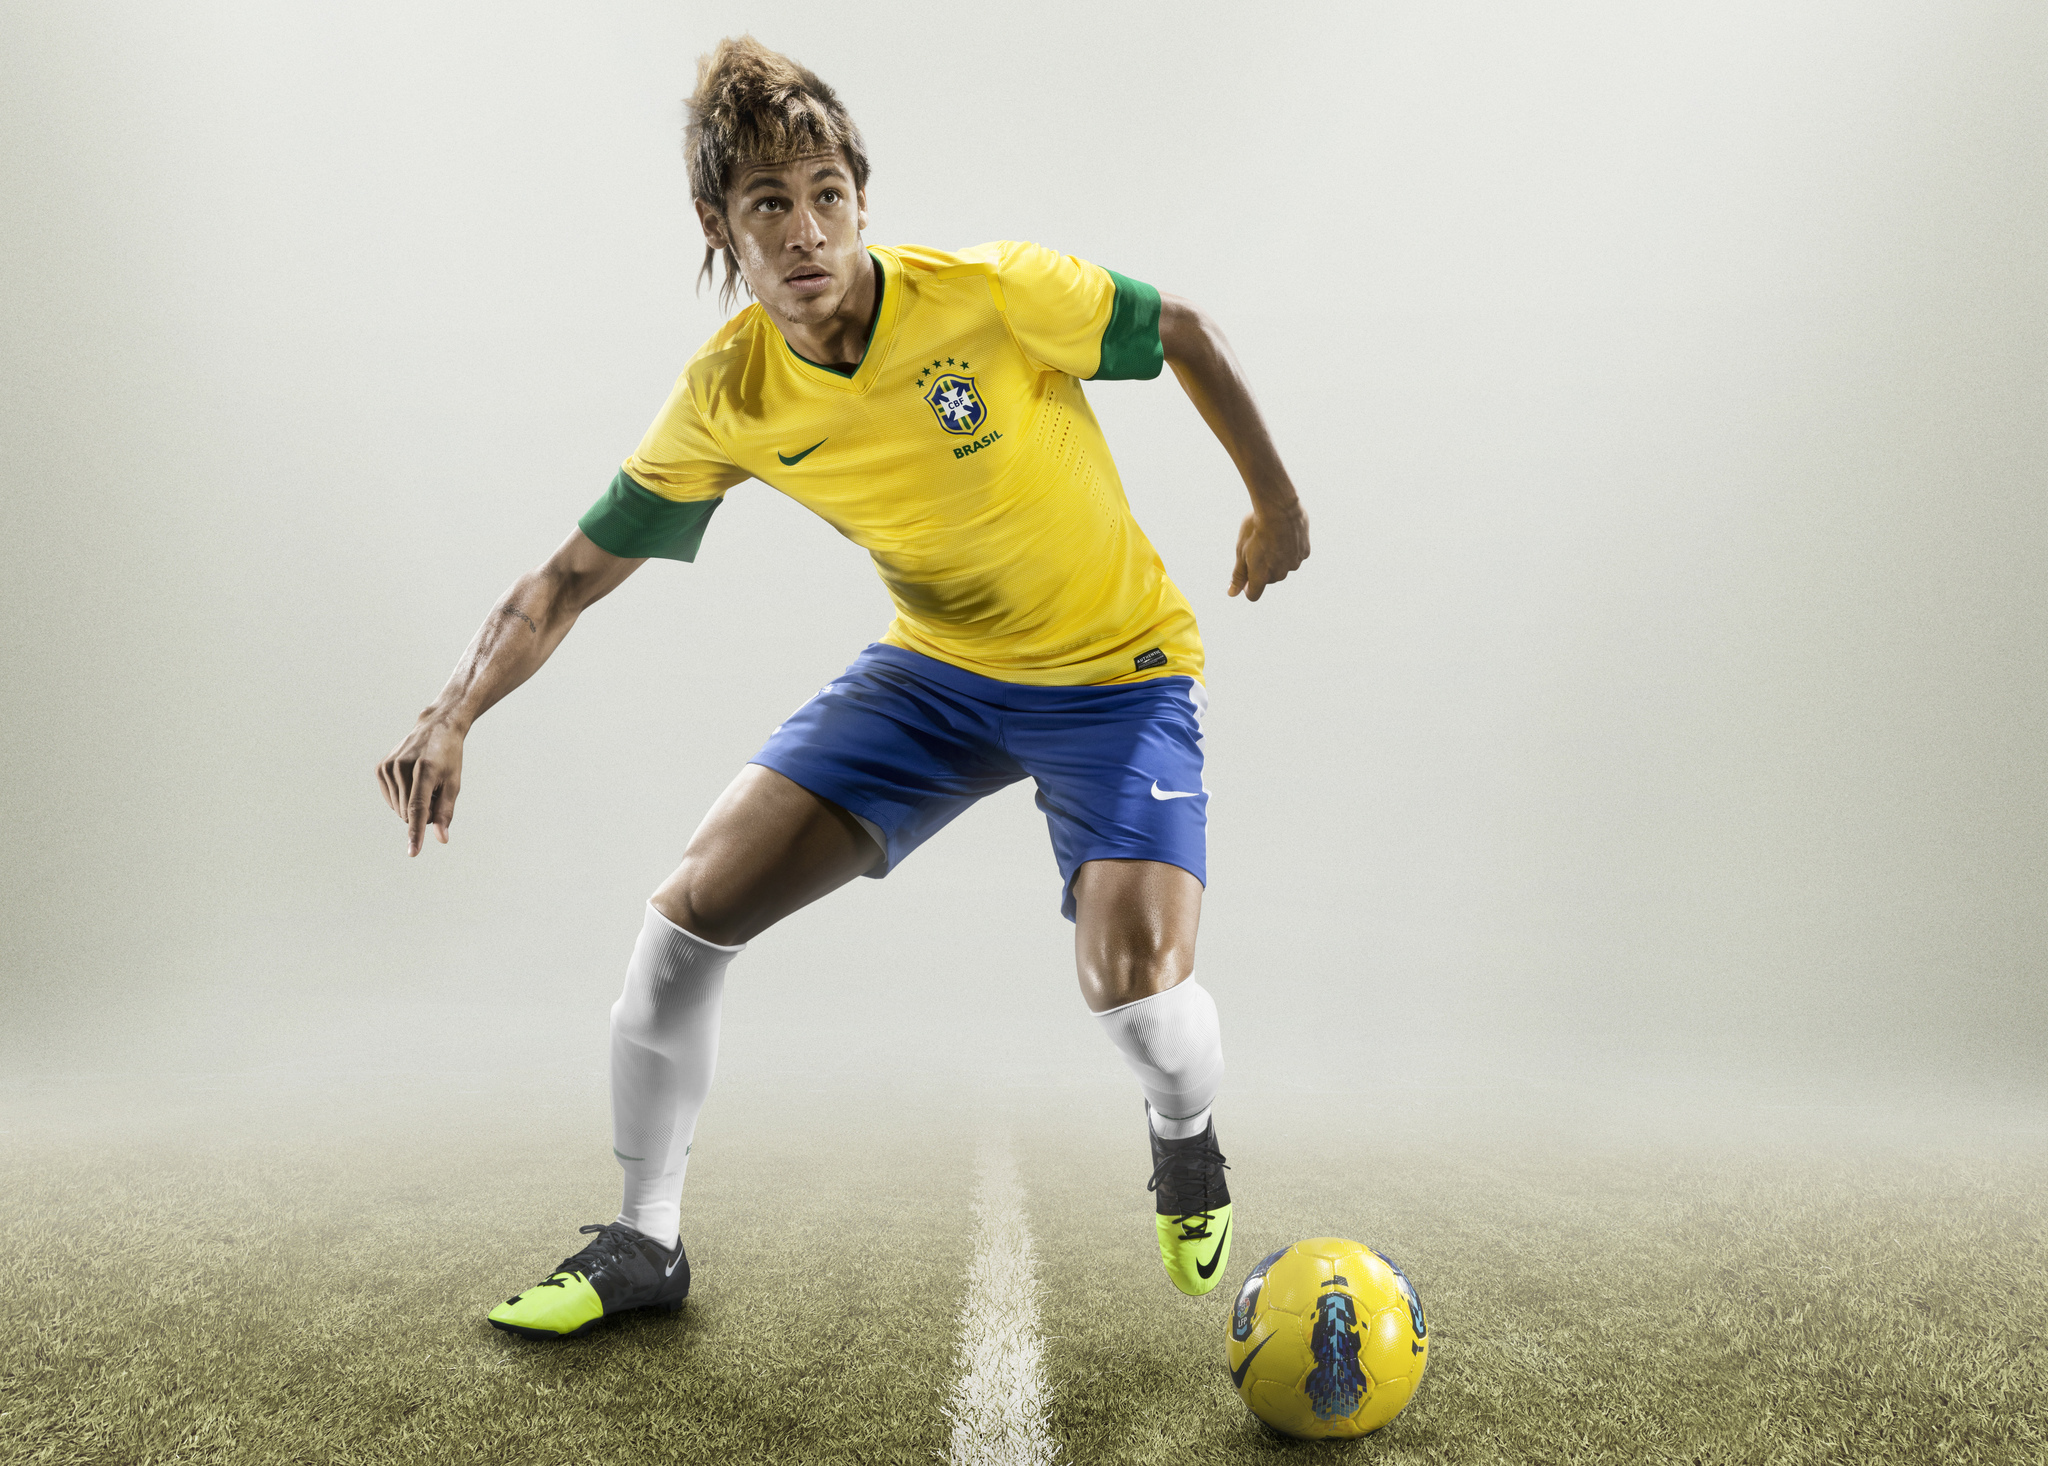 Wallpaper Of Neymar Background & Hd Image - Neymar Brazil 2012 13 - HD Wallpaper 